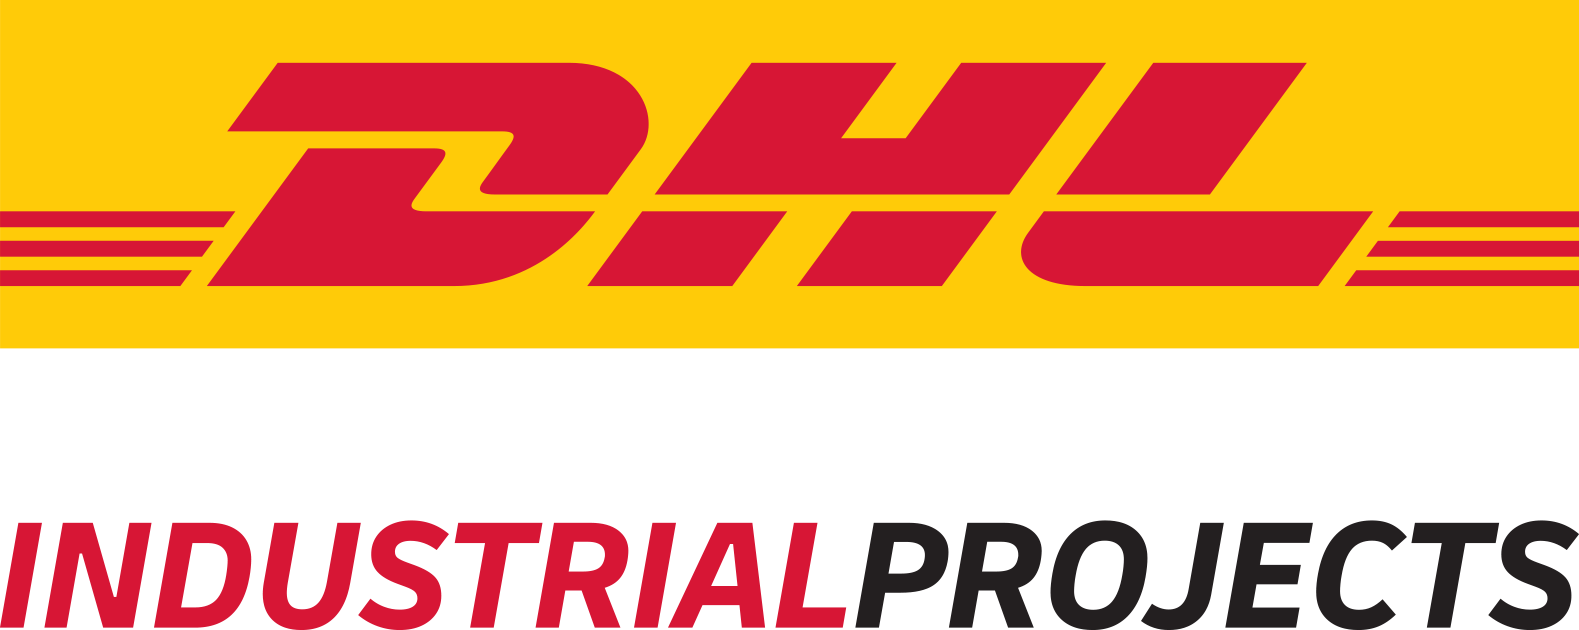 DHL-IP_logo.png